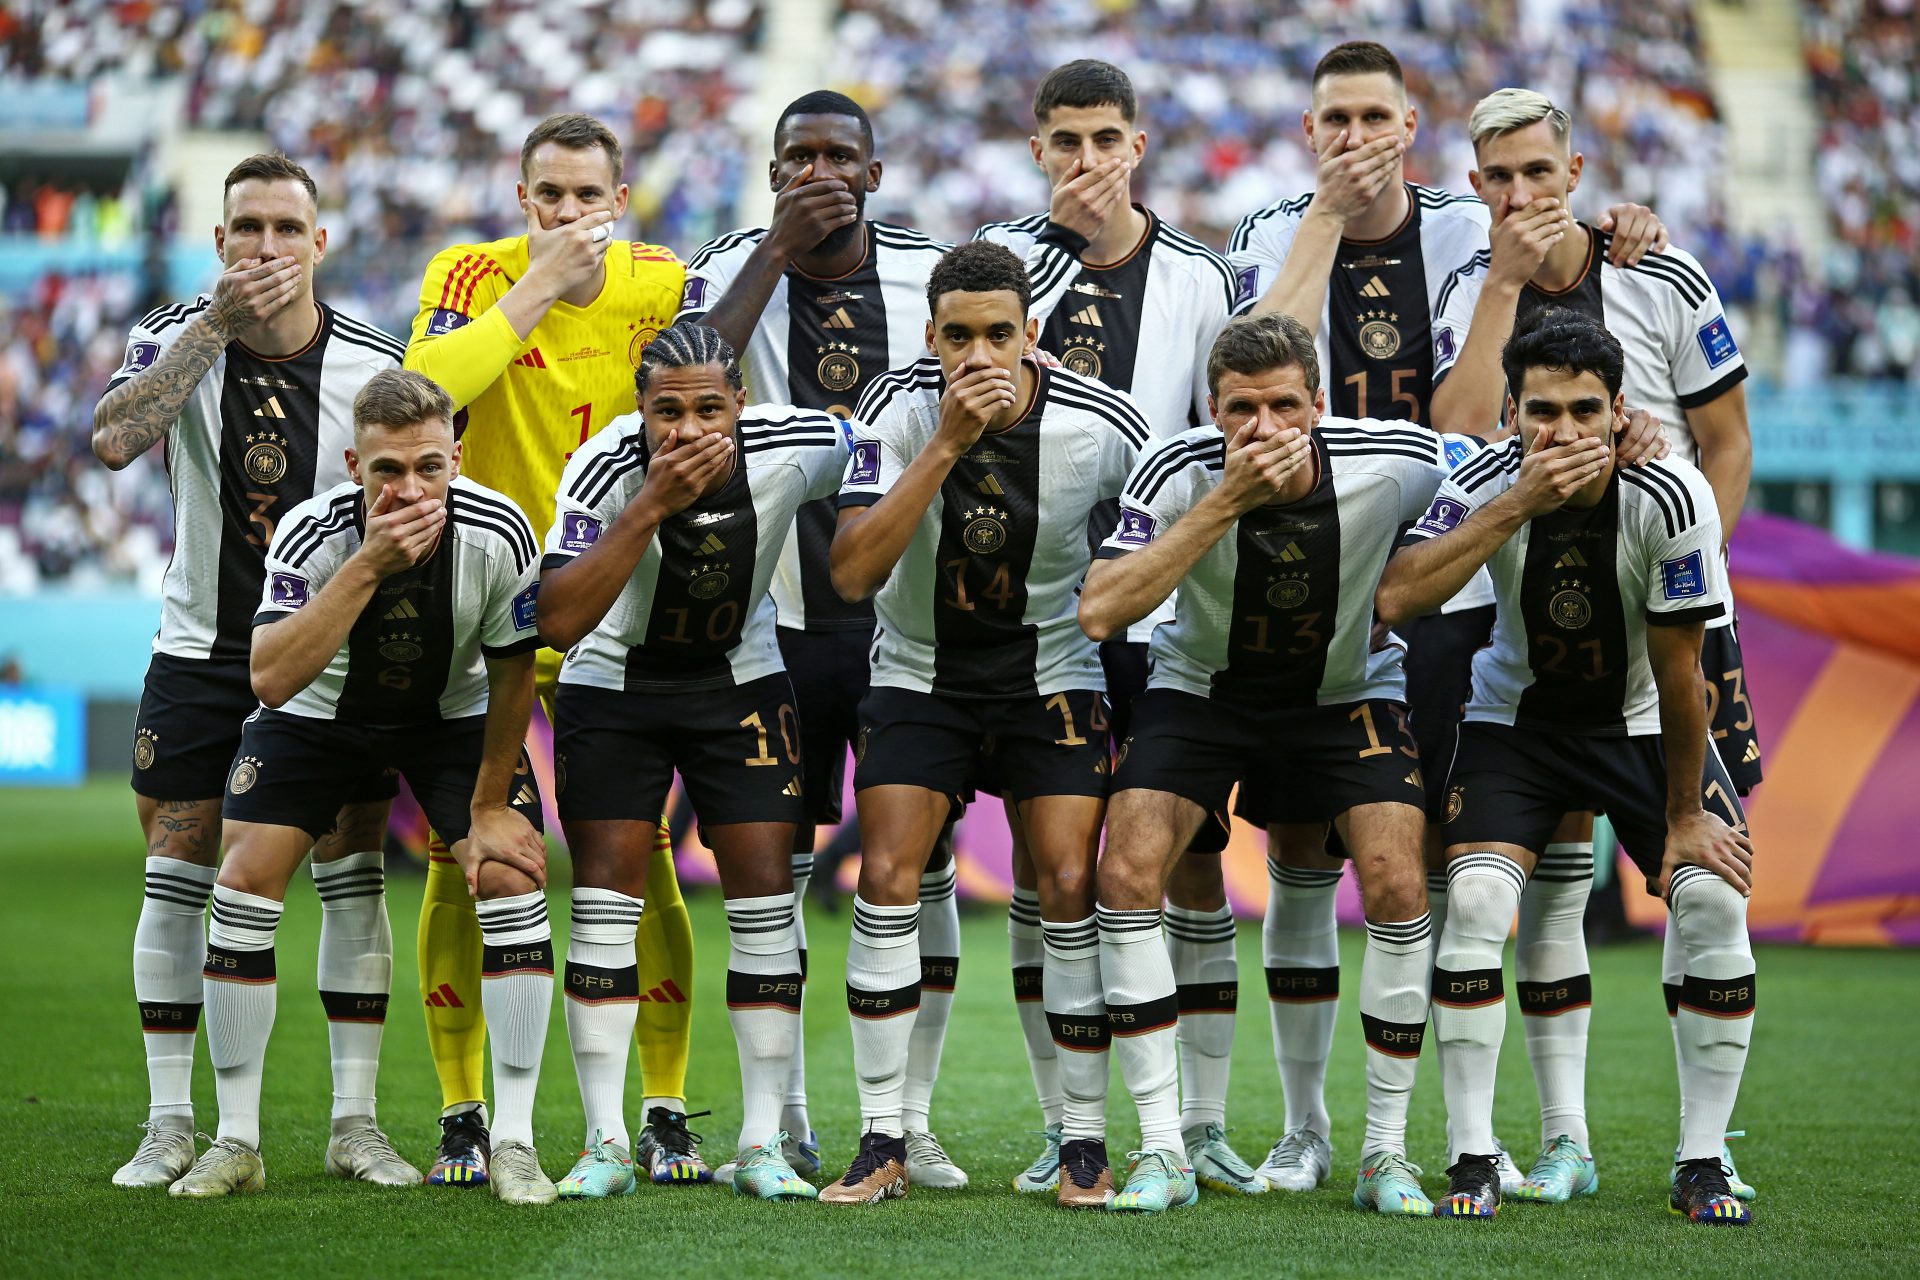 Jogadores da Alemanha colocam a mão na boca como forma de protesto momentos antes do jogo contra o Japão - Foto: Heuler Andrey/Dia Esportivo/Estadão Conteúdo